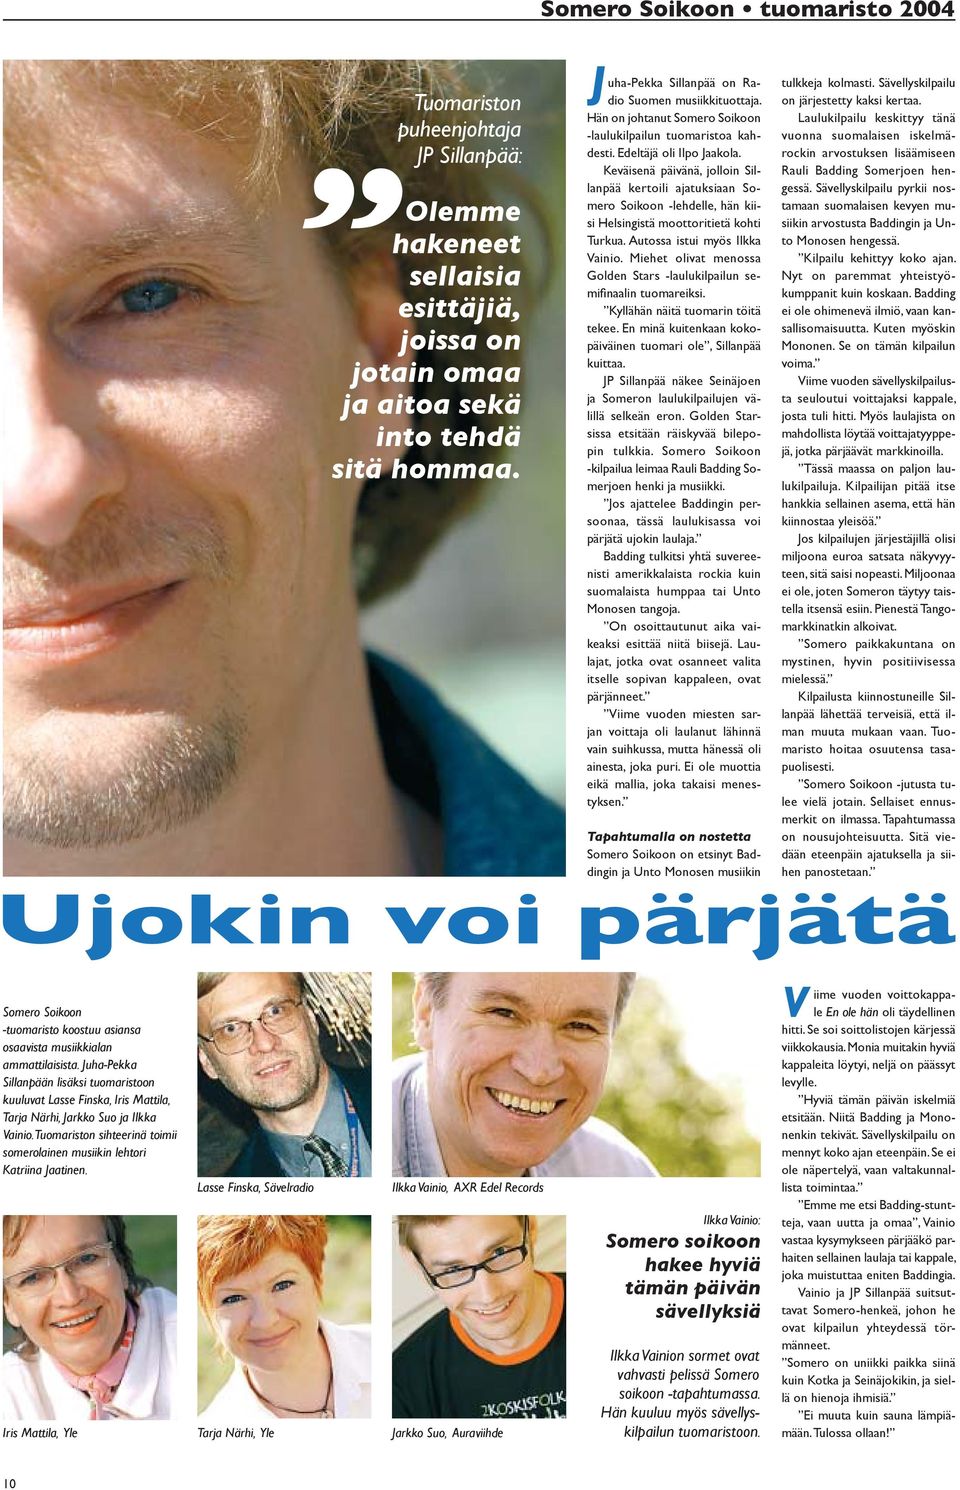 Keväisenä päivänä, jolloin Sillanpää kertoili ajatuksiaan Somero Soikoon -lehdelle, hän kiisi Helsingistä moottoritietä kohti Turkua. Autossa istui myös Ilkka Vainio.